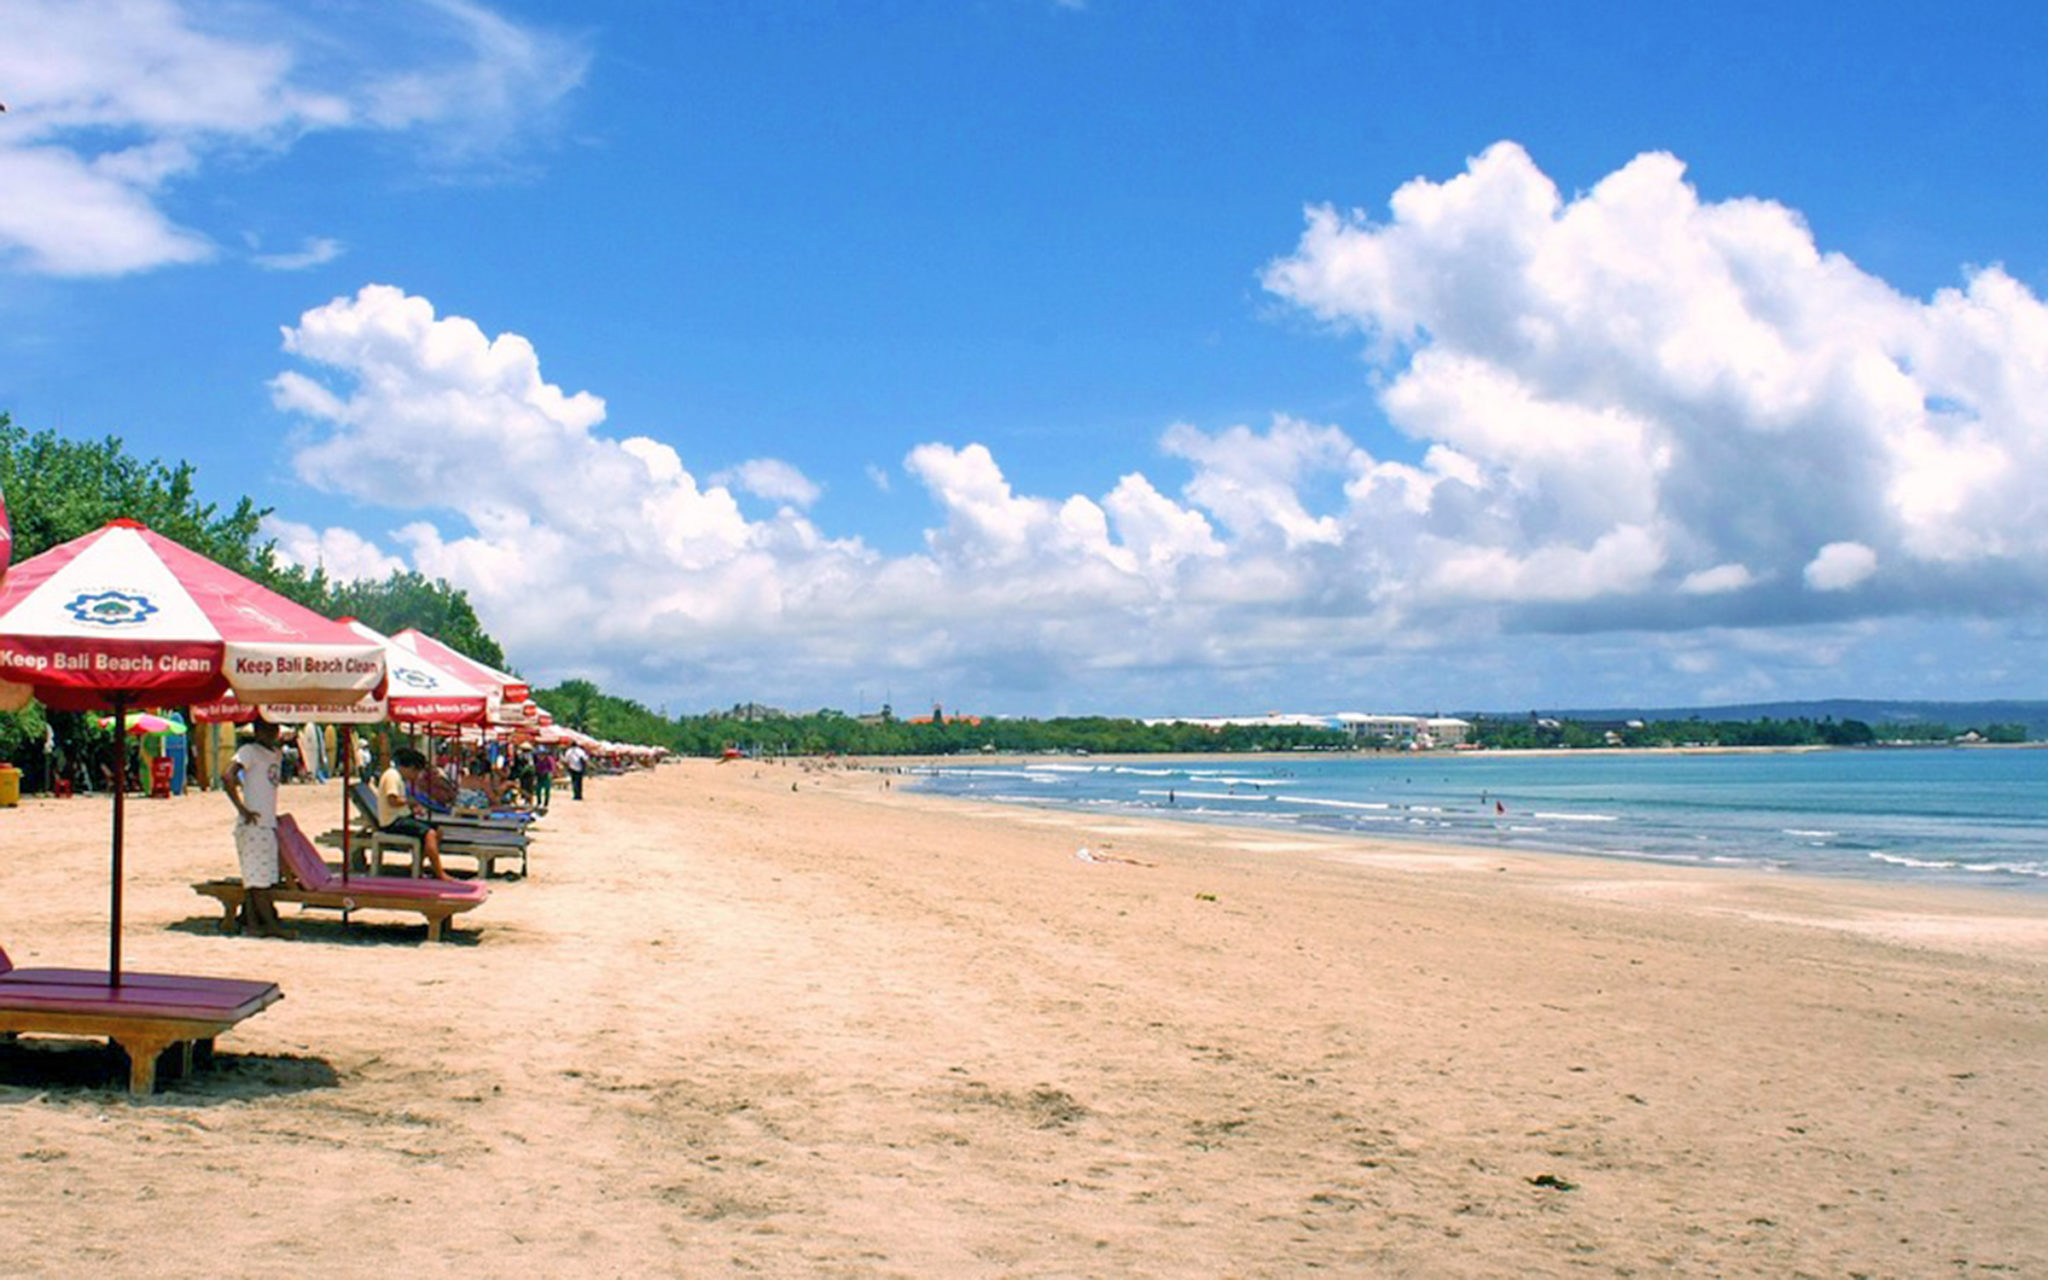  Kuta  Beach  Bali  Indonesia Top 10 Beaches to Visit in 